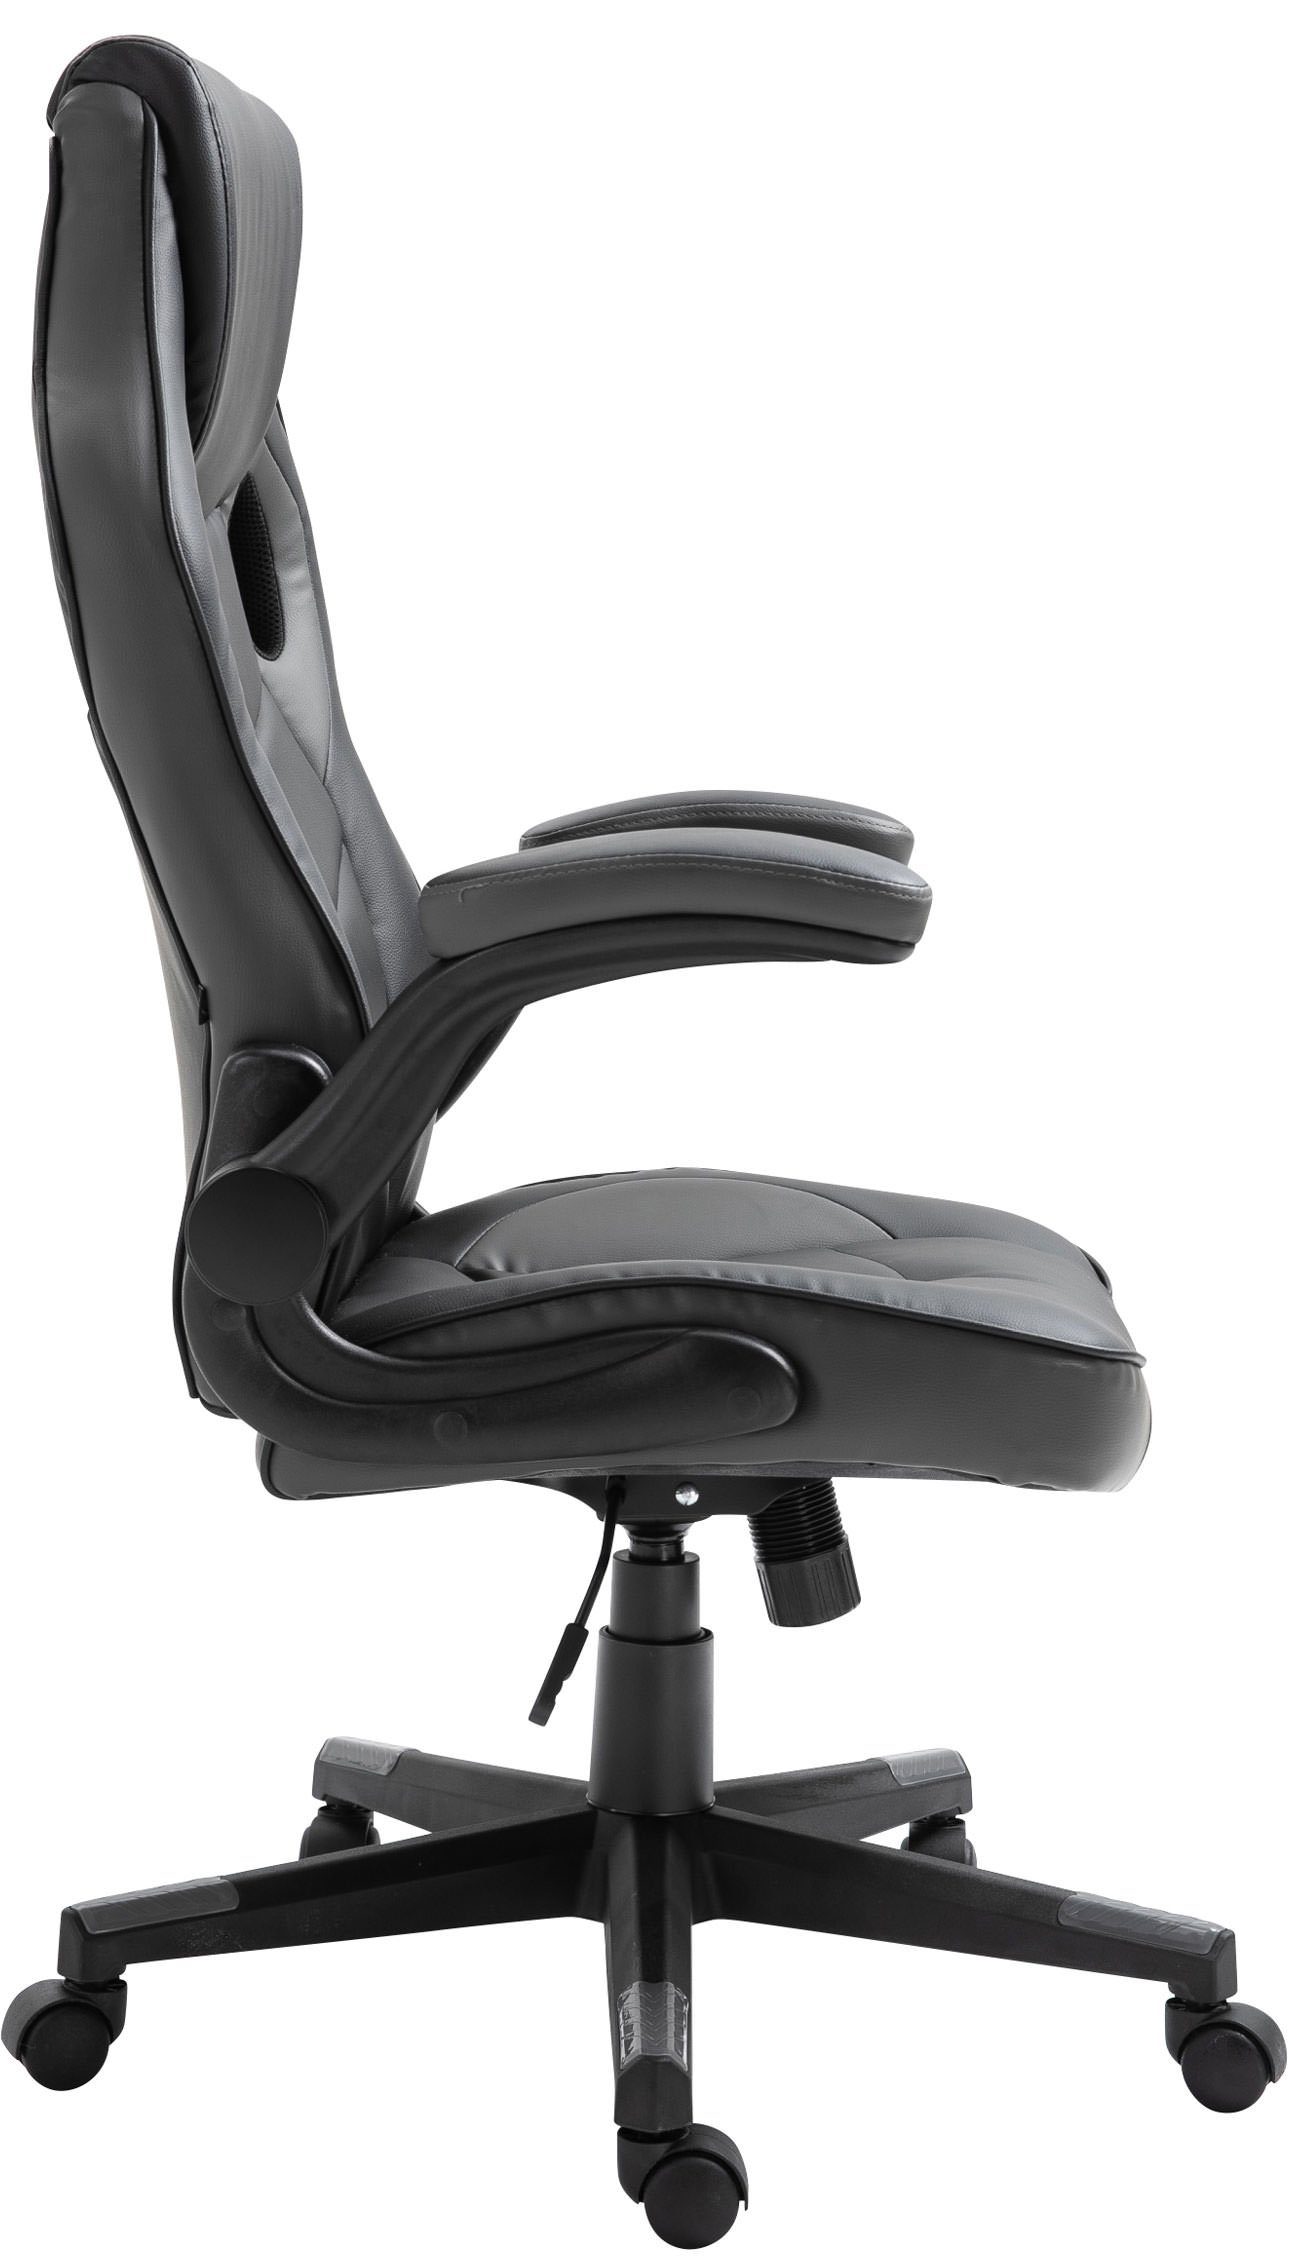 höhenverstellbar Kunstleder, Chair Gaming Omis und CLP schwarz/grau drehbar